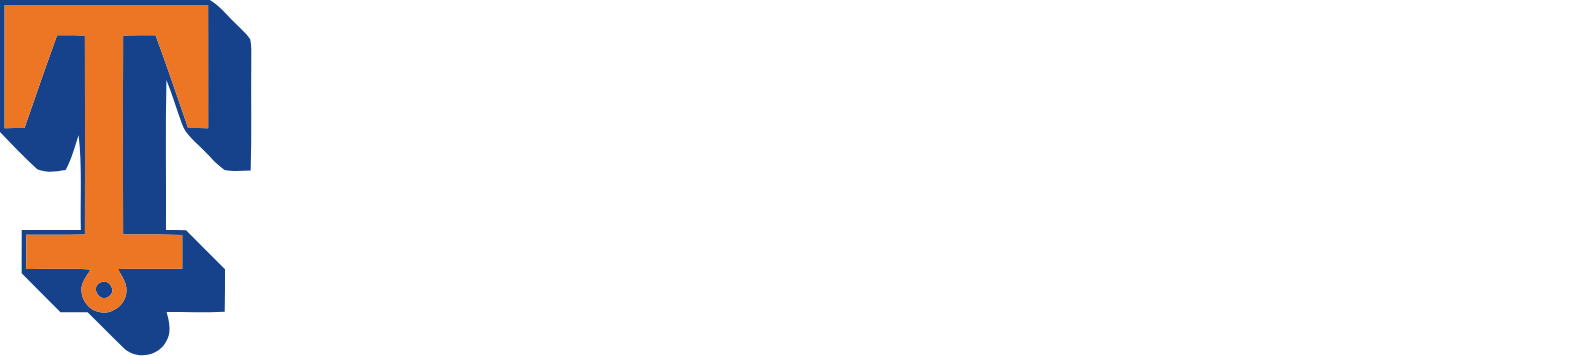 Tidewater logo grand pour les fonds sombres (PNG transparent)